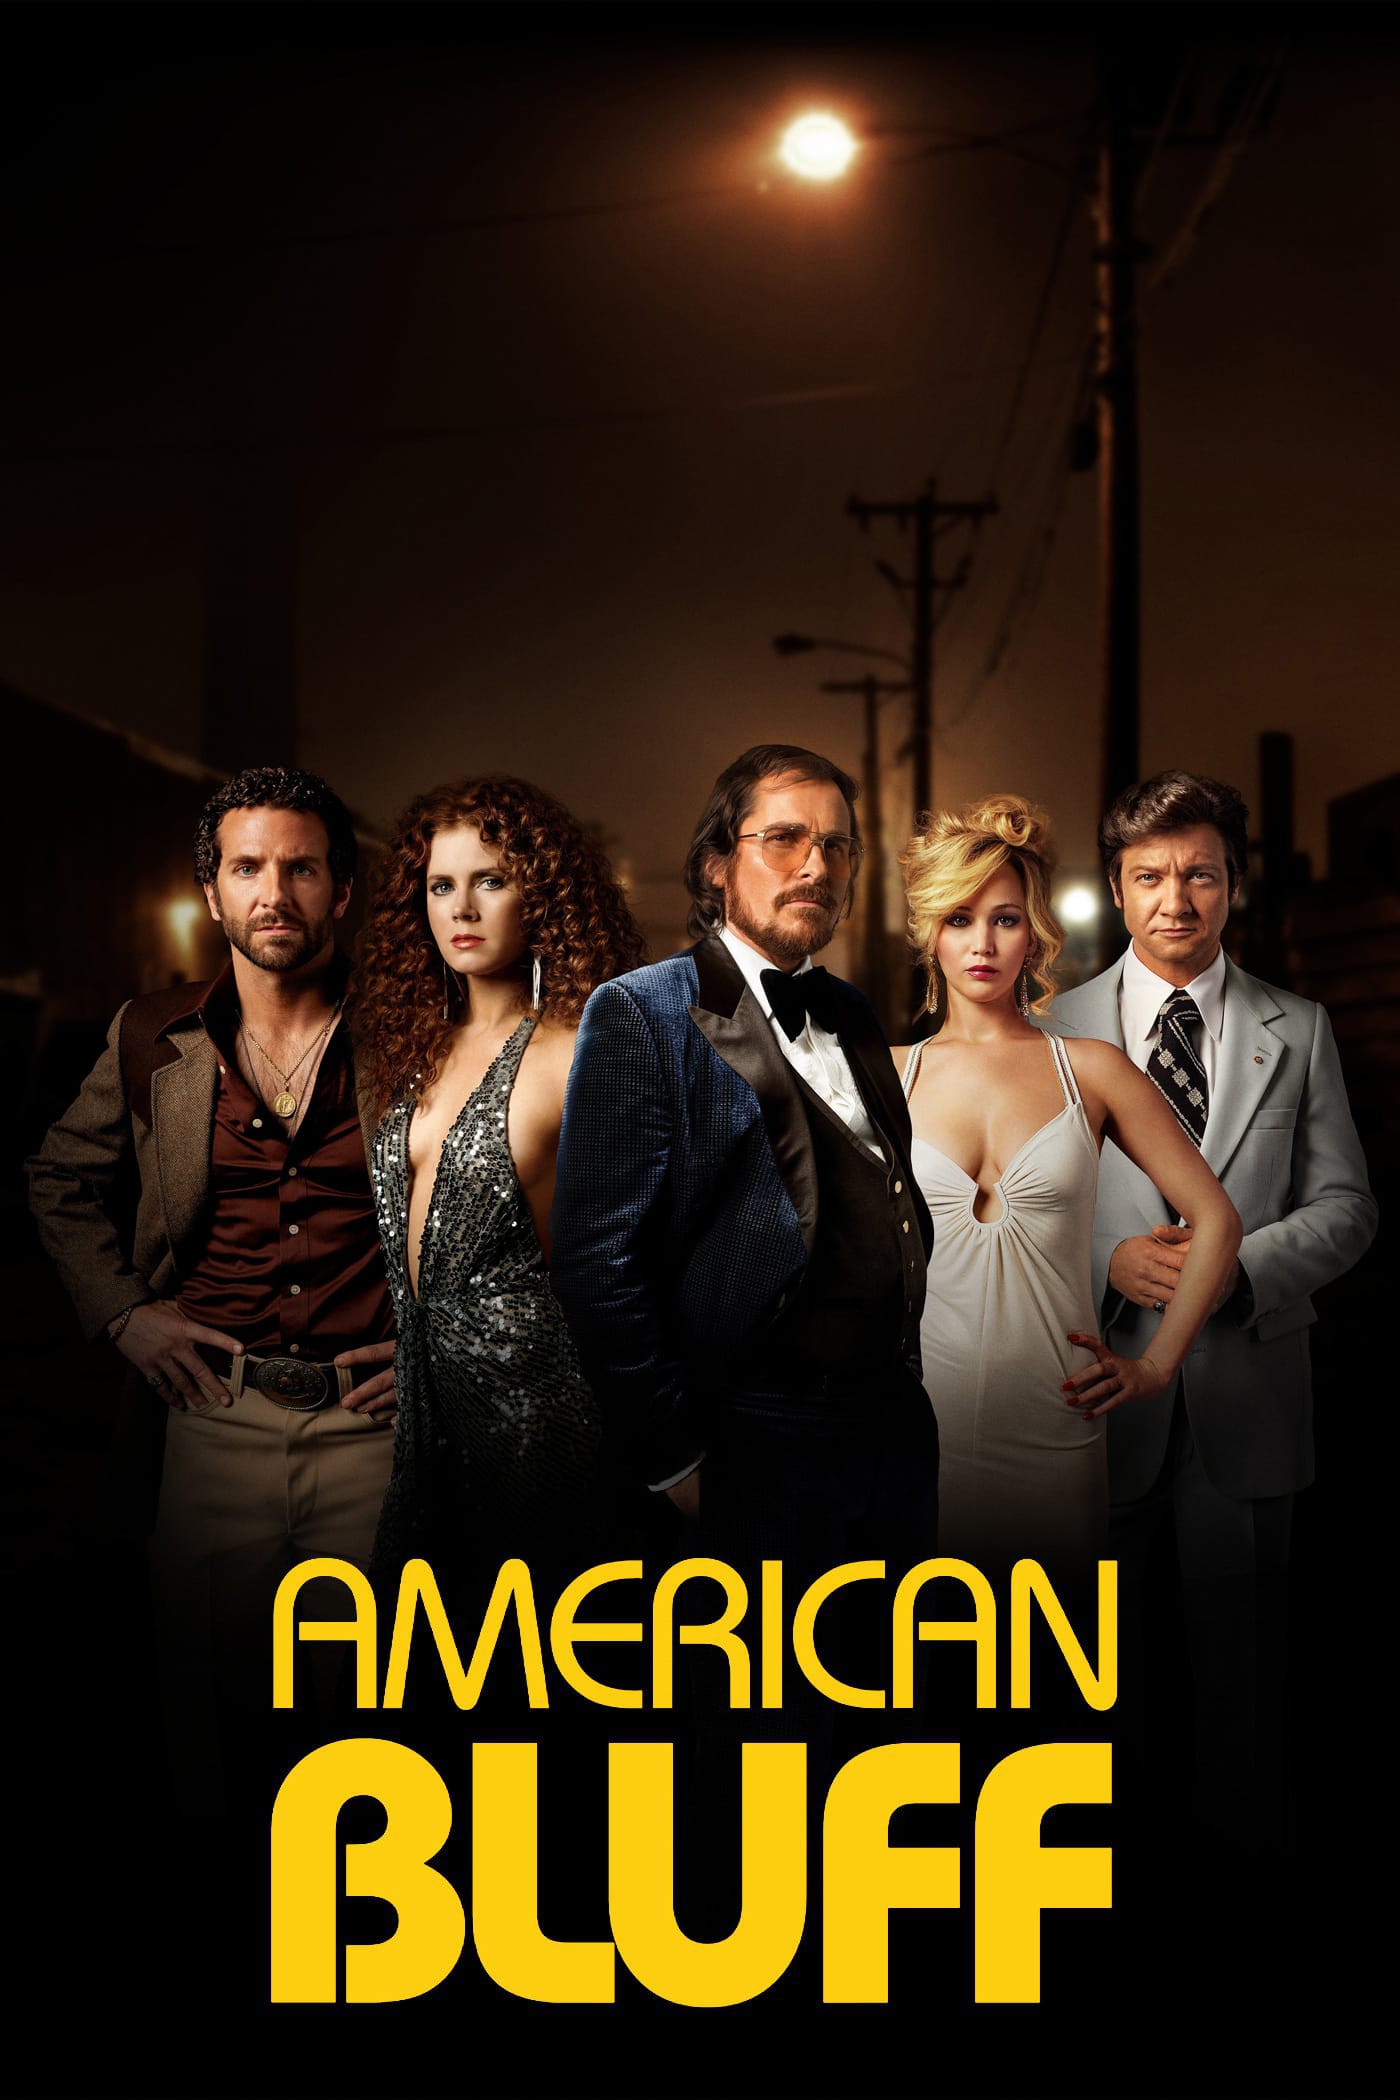 Affiche du film "American Bluff"